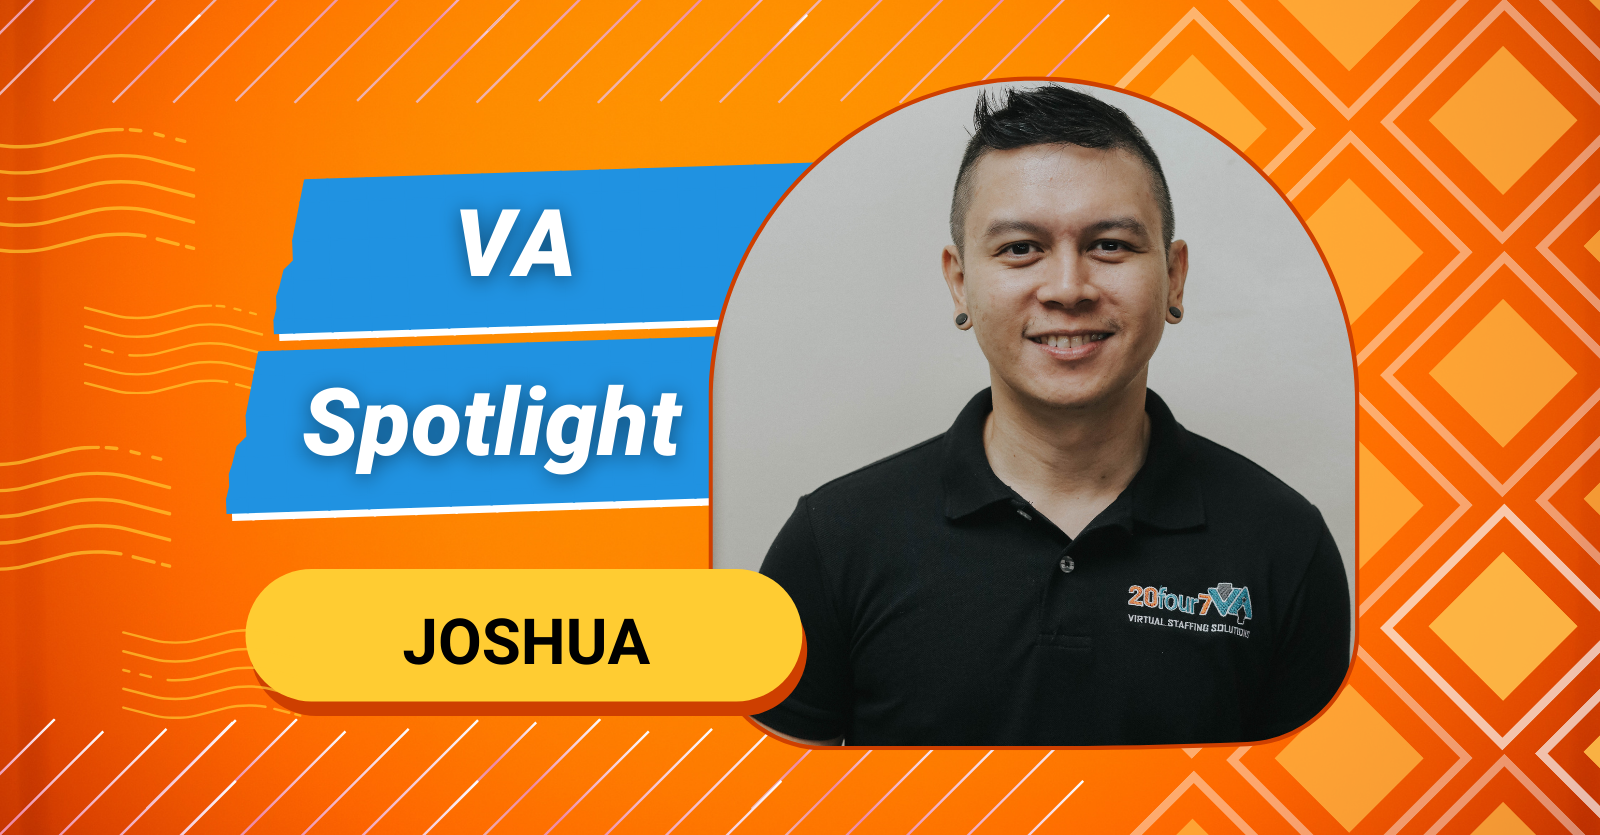 VA Spotlight: Joshua